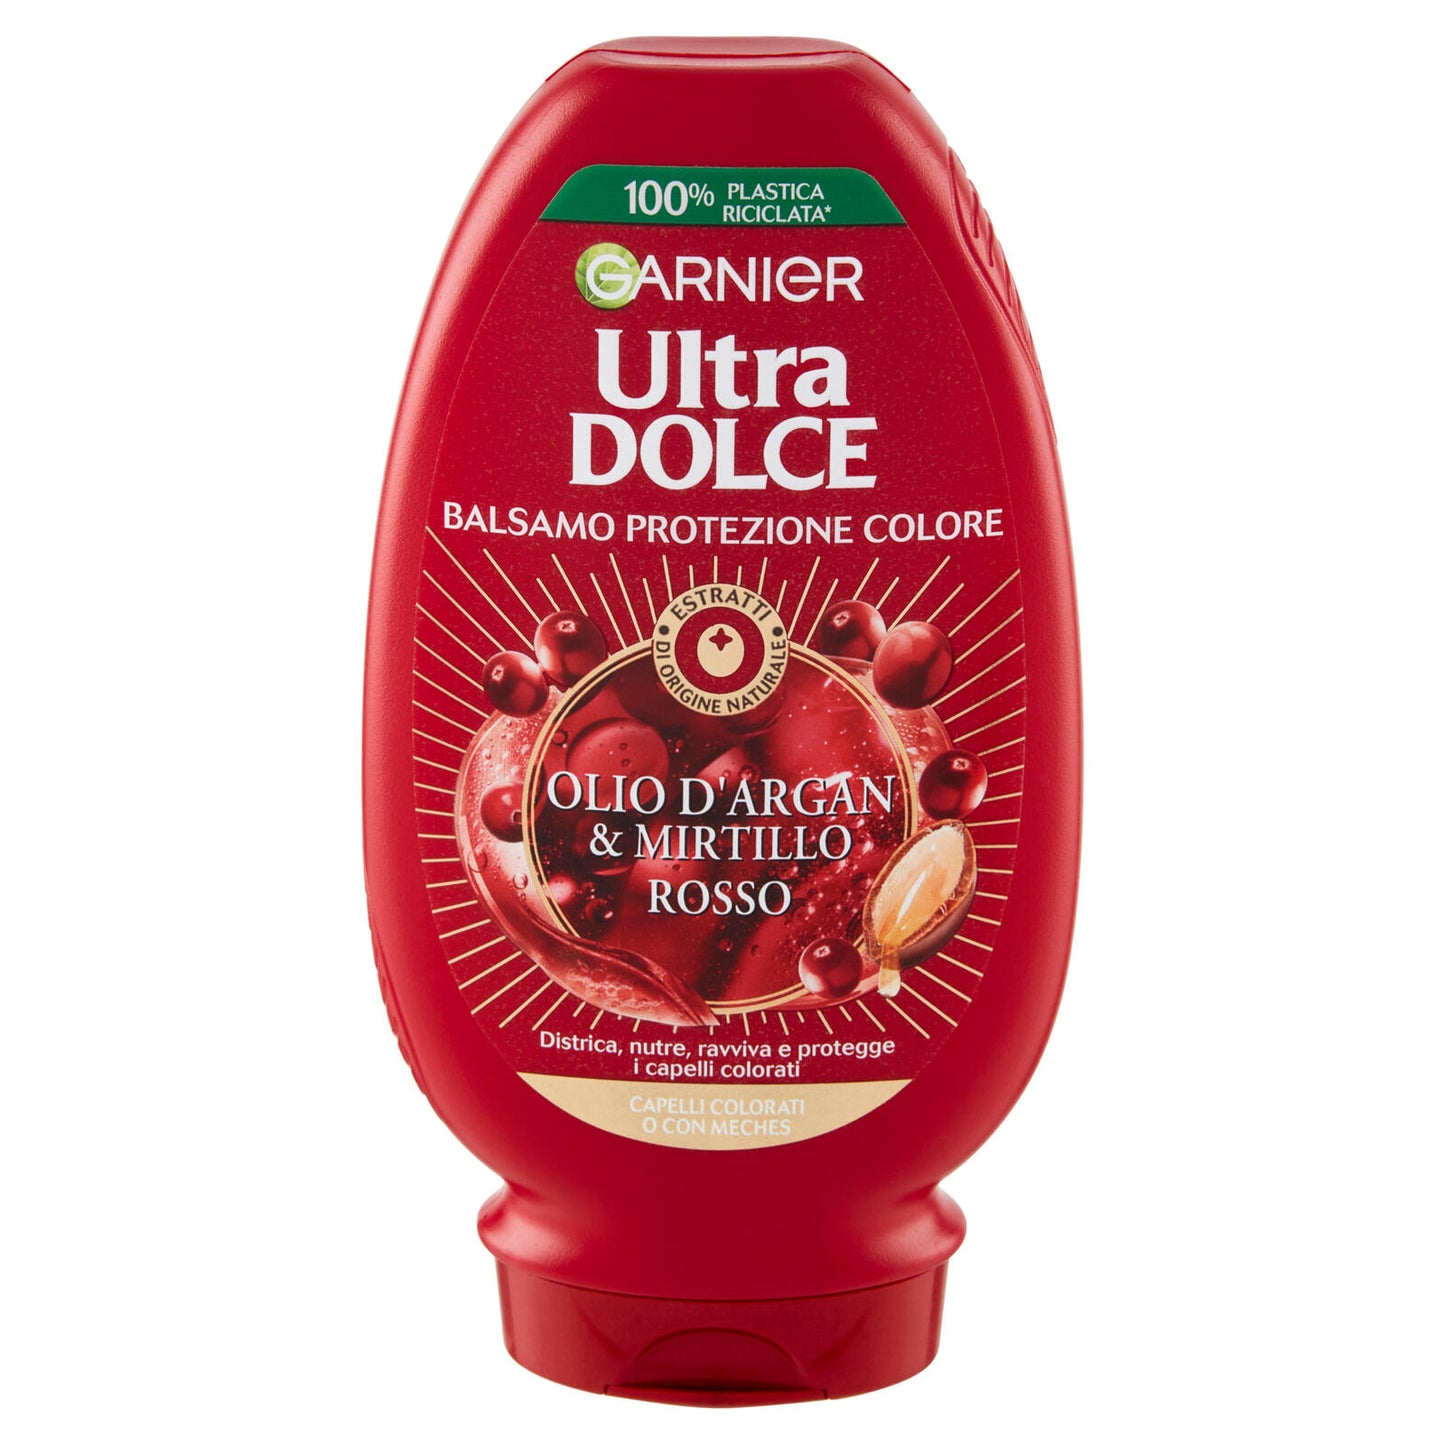 Garnier Ultra Dolce Balsamo all'Olio di Argan e Mirtillo Rosso per capelli trattati o colorati 200ml